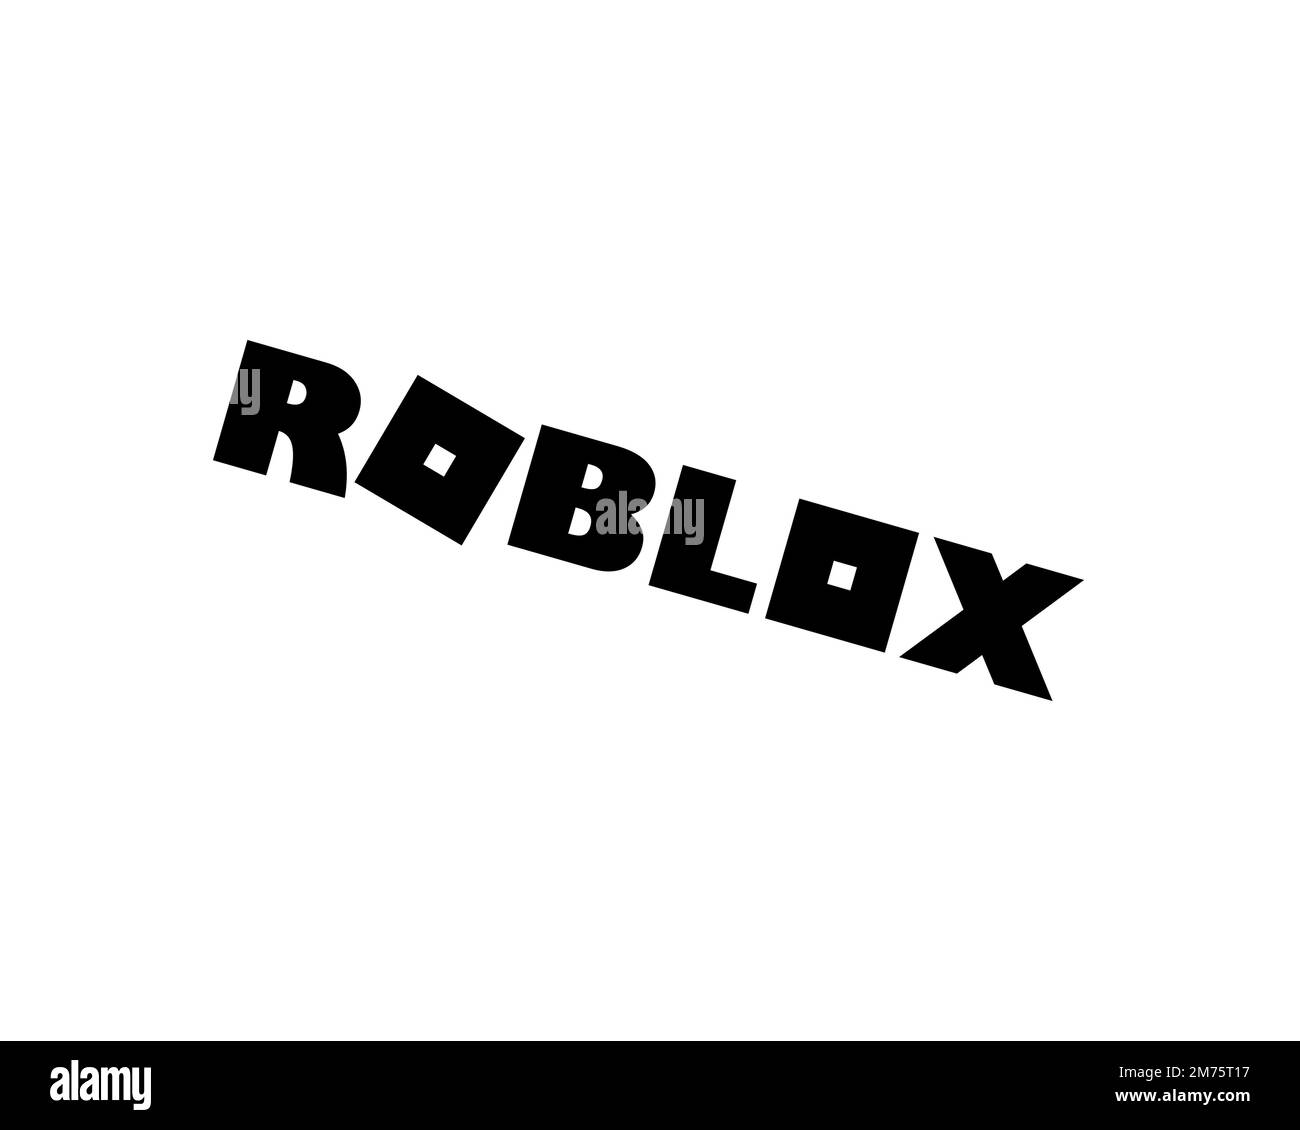 Aplicação roblox. imagem de stock editorial. Imagem de esperto - 201952364